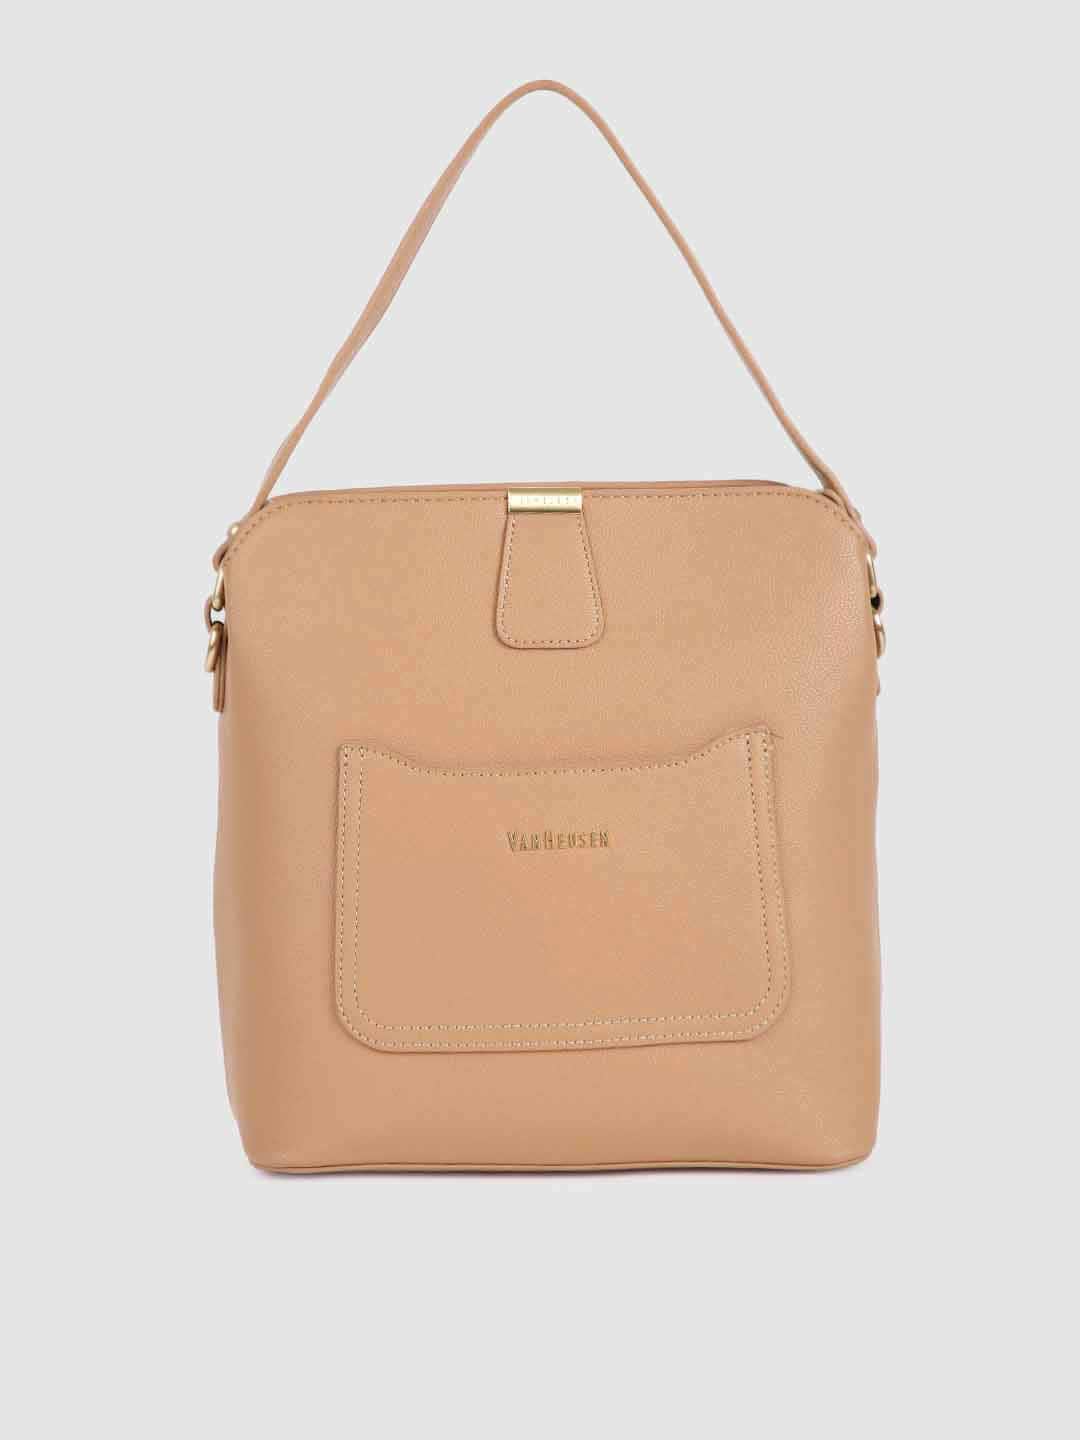 Van Heusen Women Pink Solid Handheld Bag Price in India